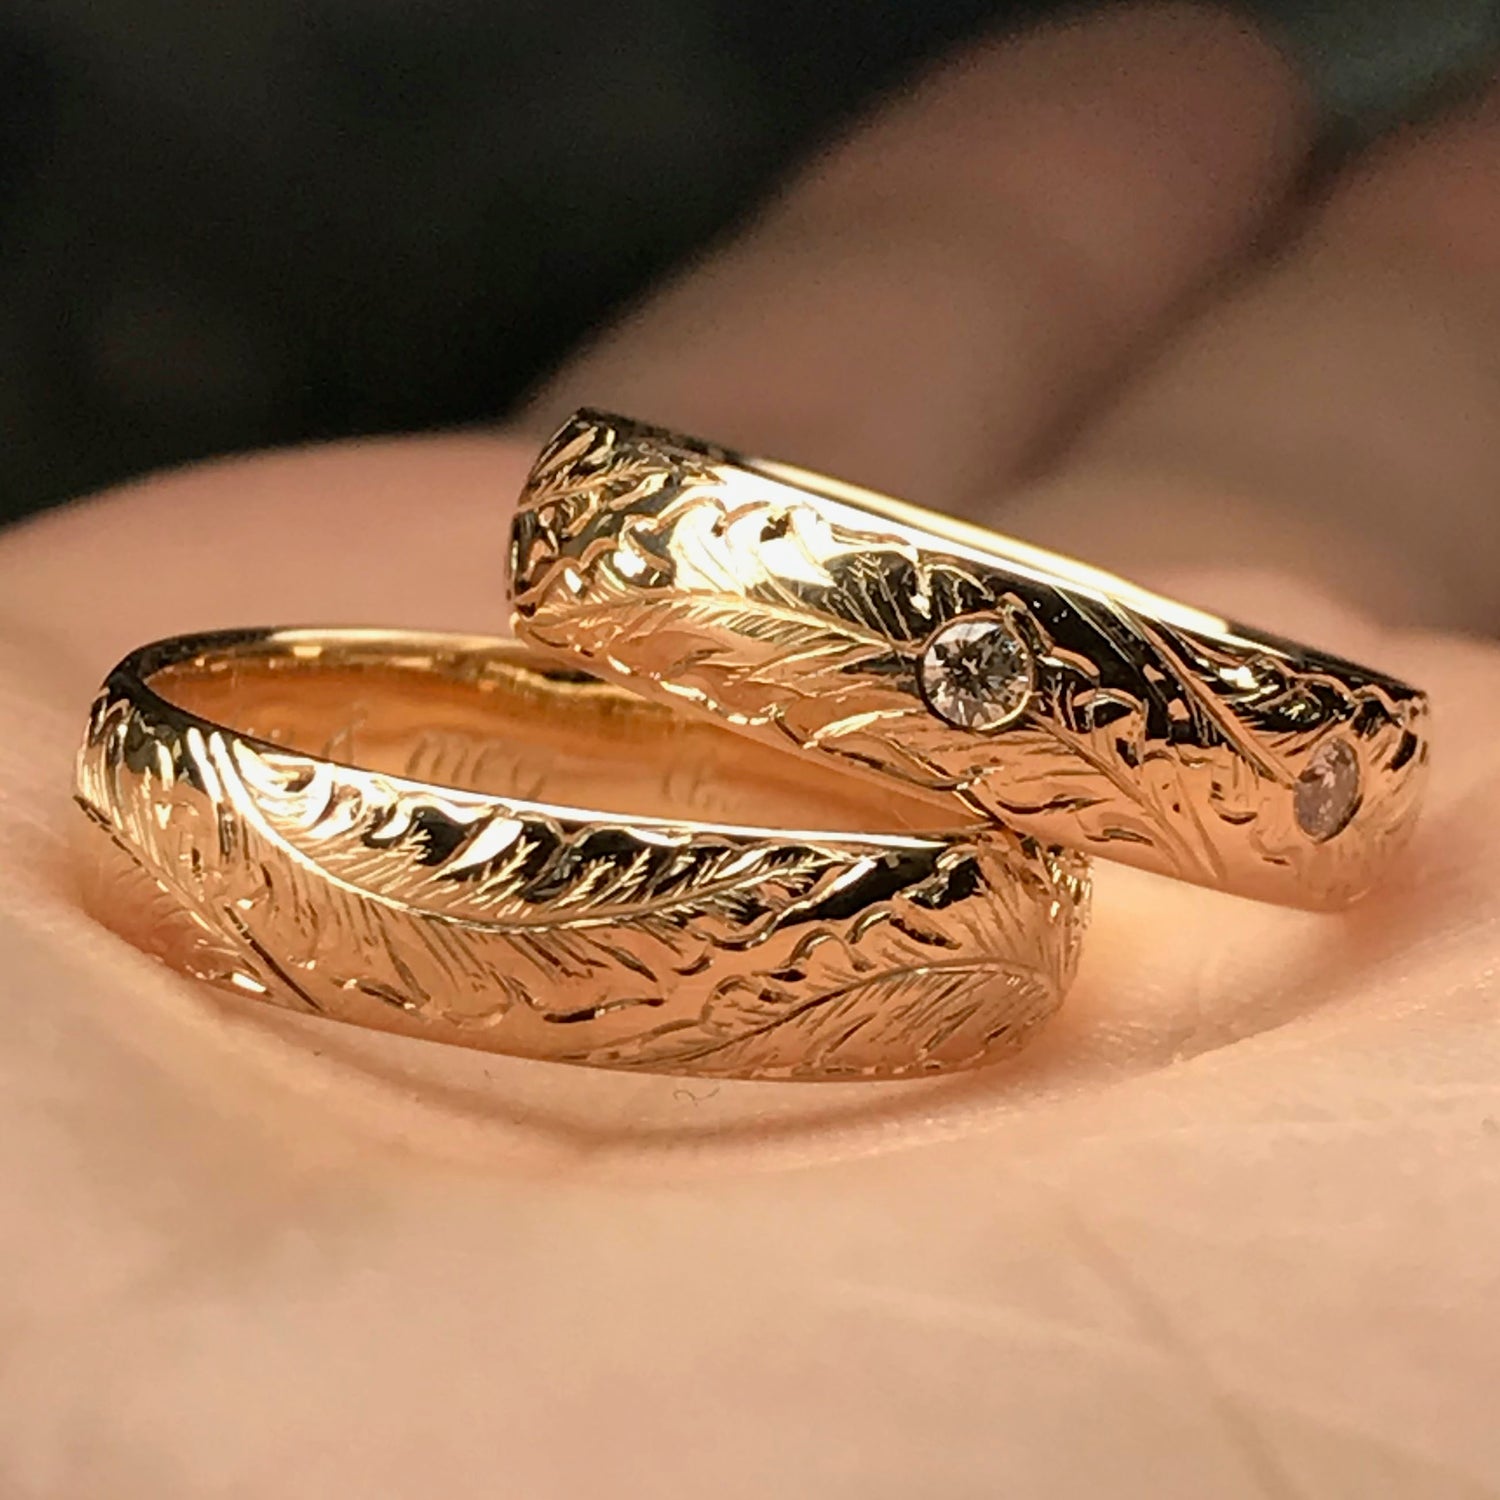 Unike gifteringer i gult gull med diamanter. Håndgravering av blader